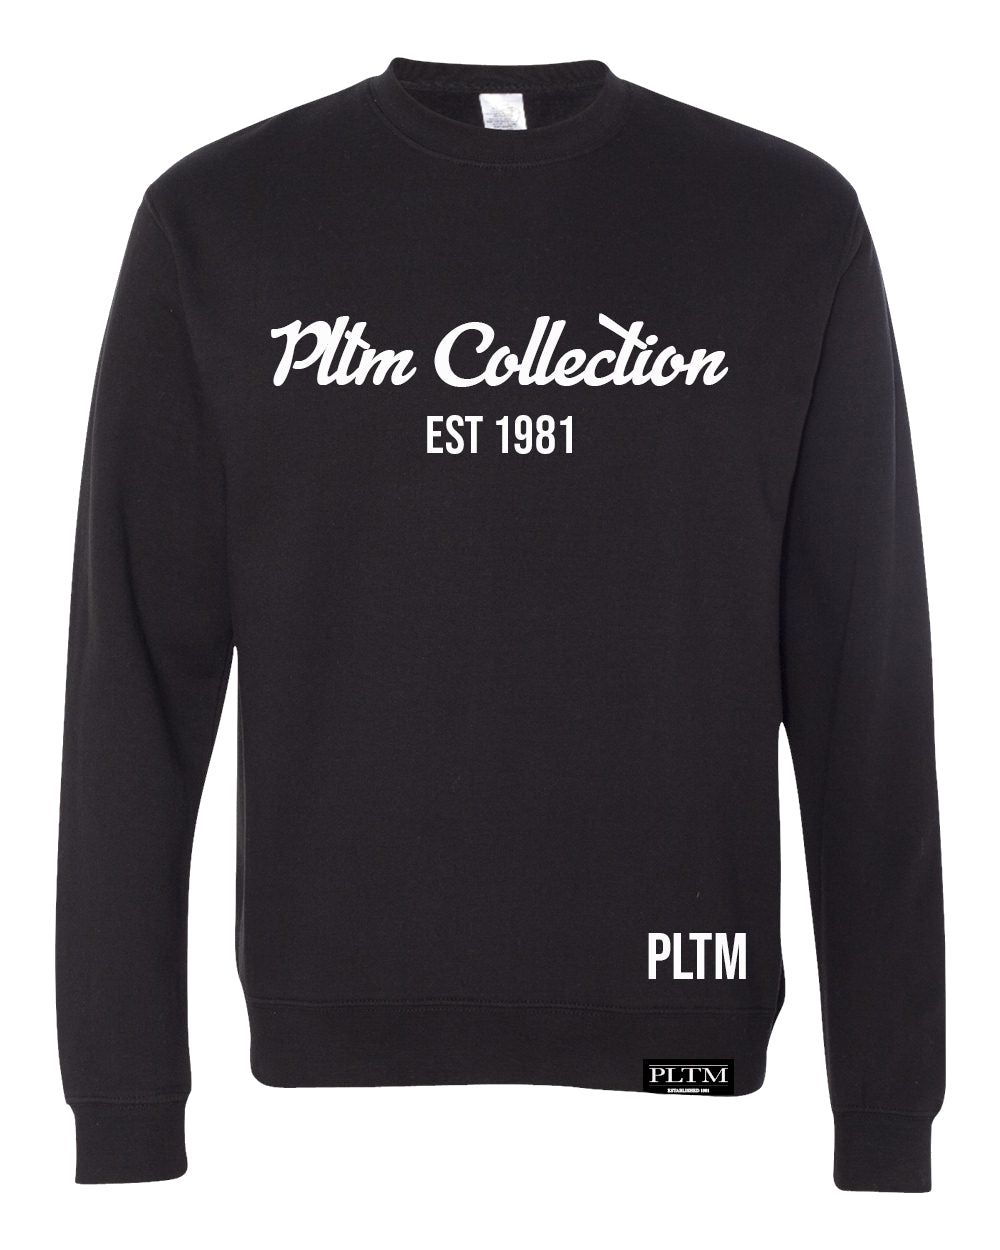 PLTM Collection Sweatshirt